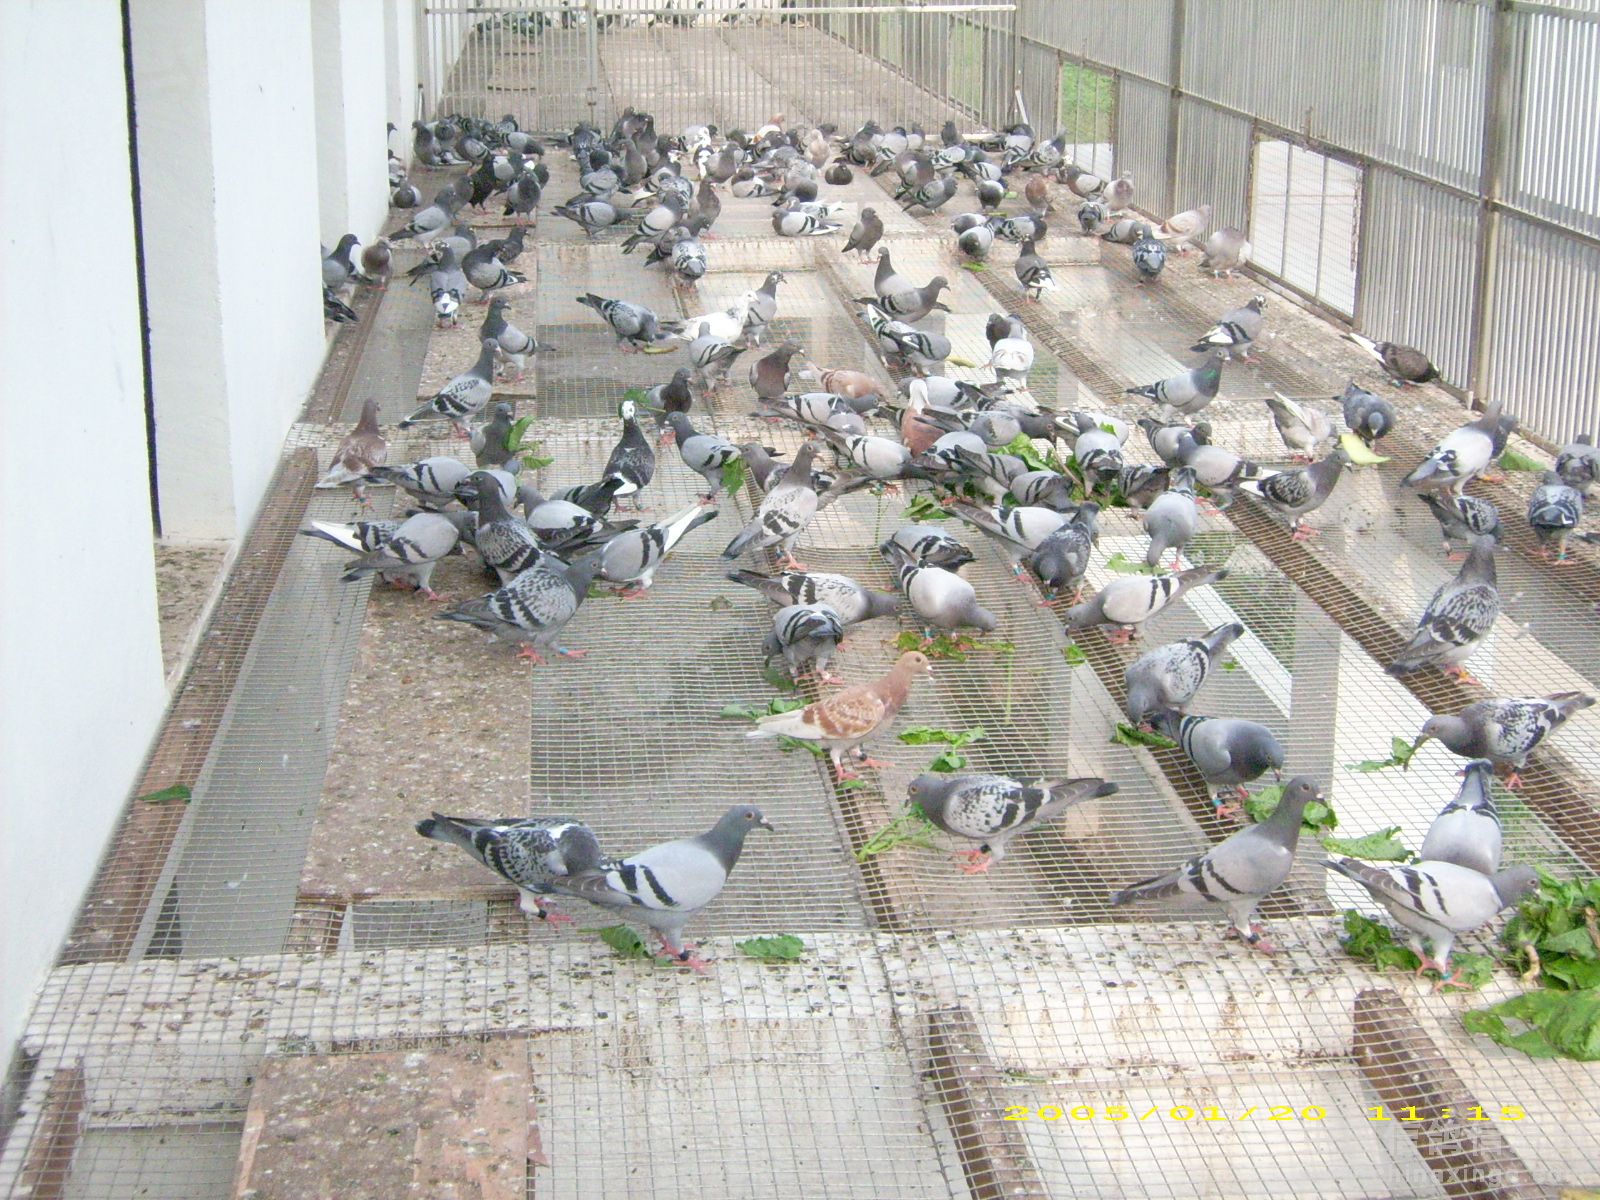 天津市天立国际赛鸽公棚图片查看-中国信鸽信息网各地公棚